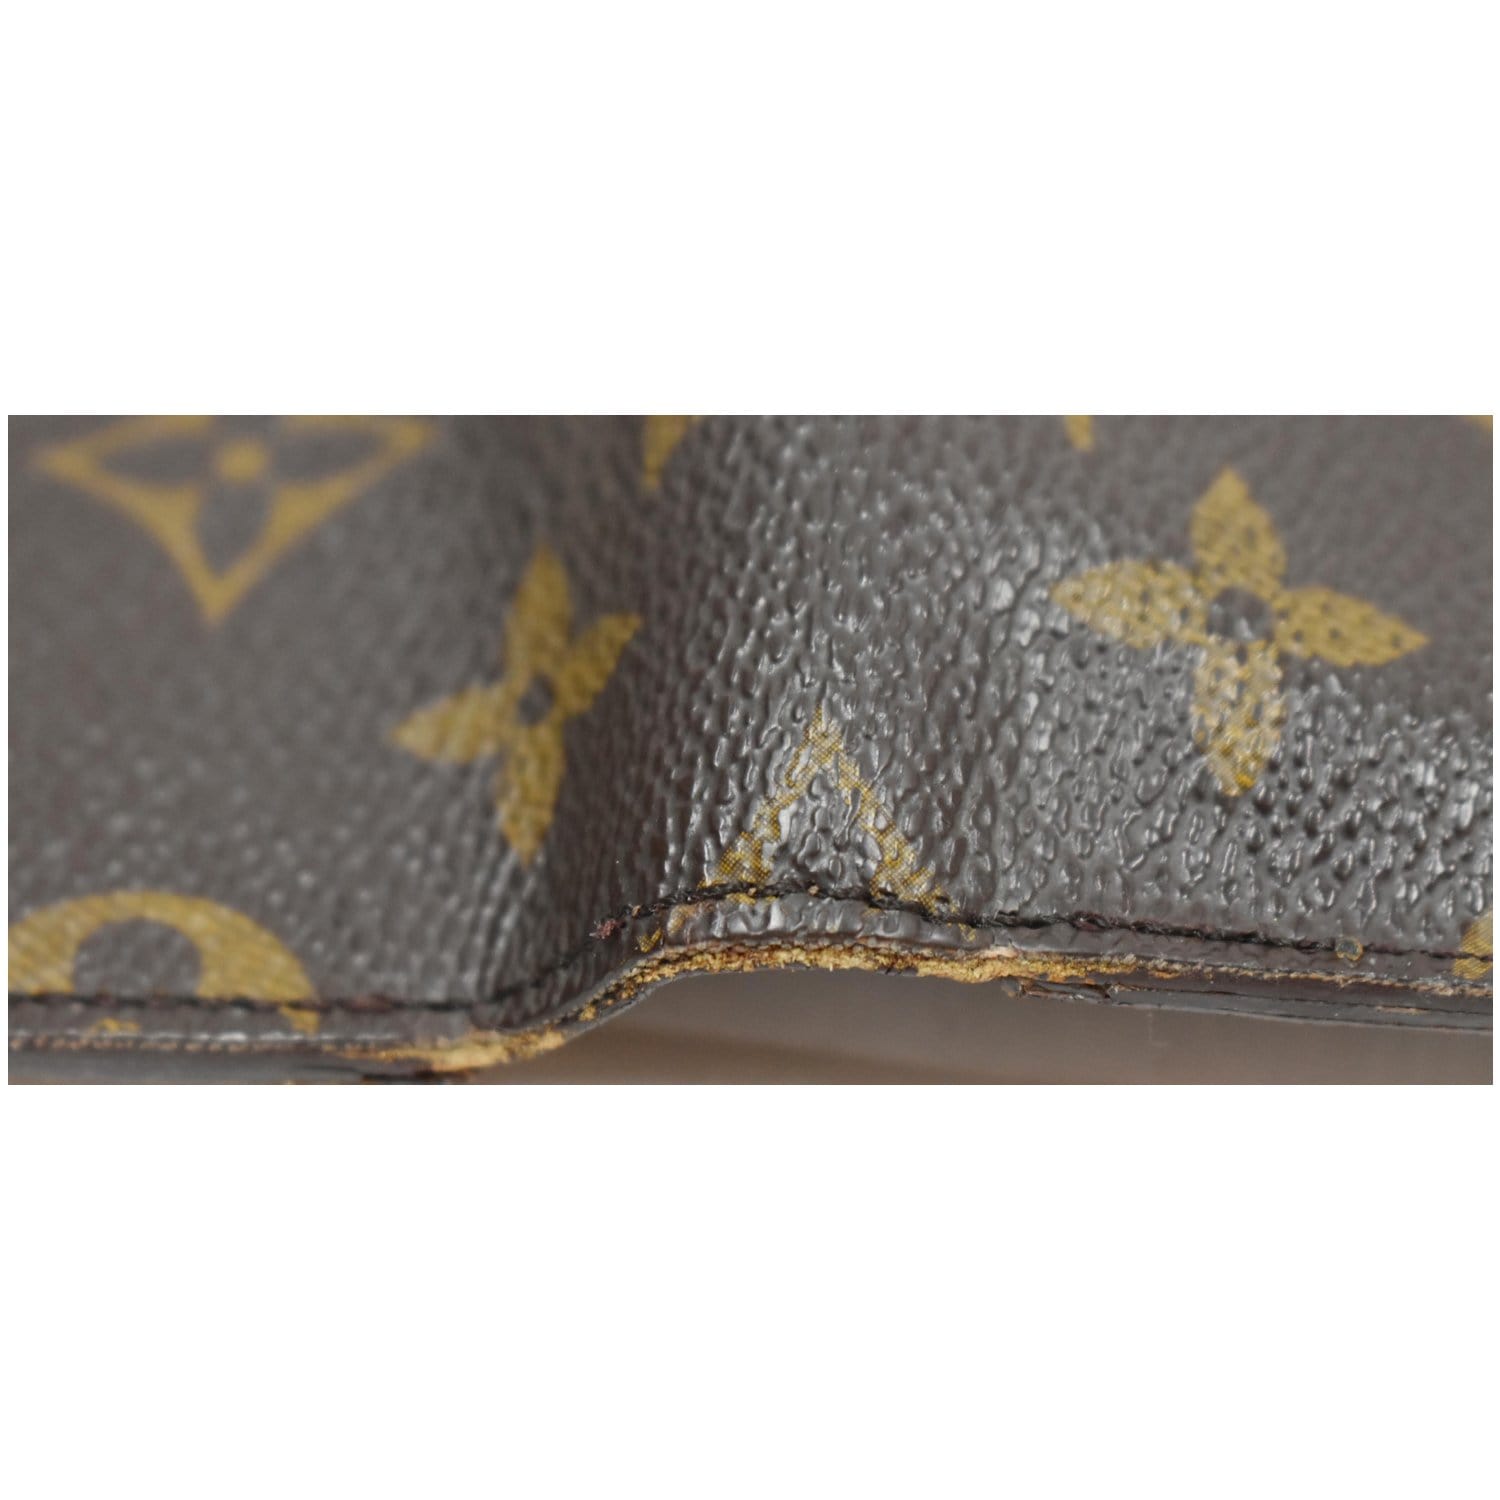 Louis Vuitton Monogram Porte Tresor Etui Papier Wallet Trifold Purse 861450